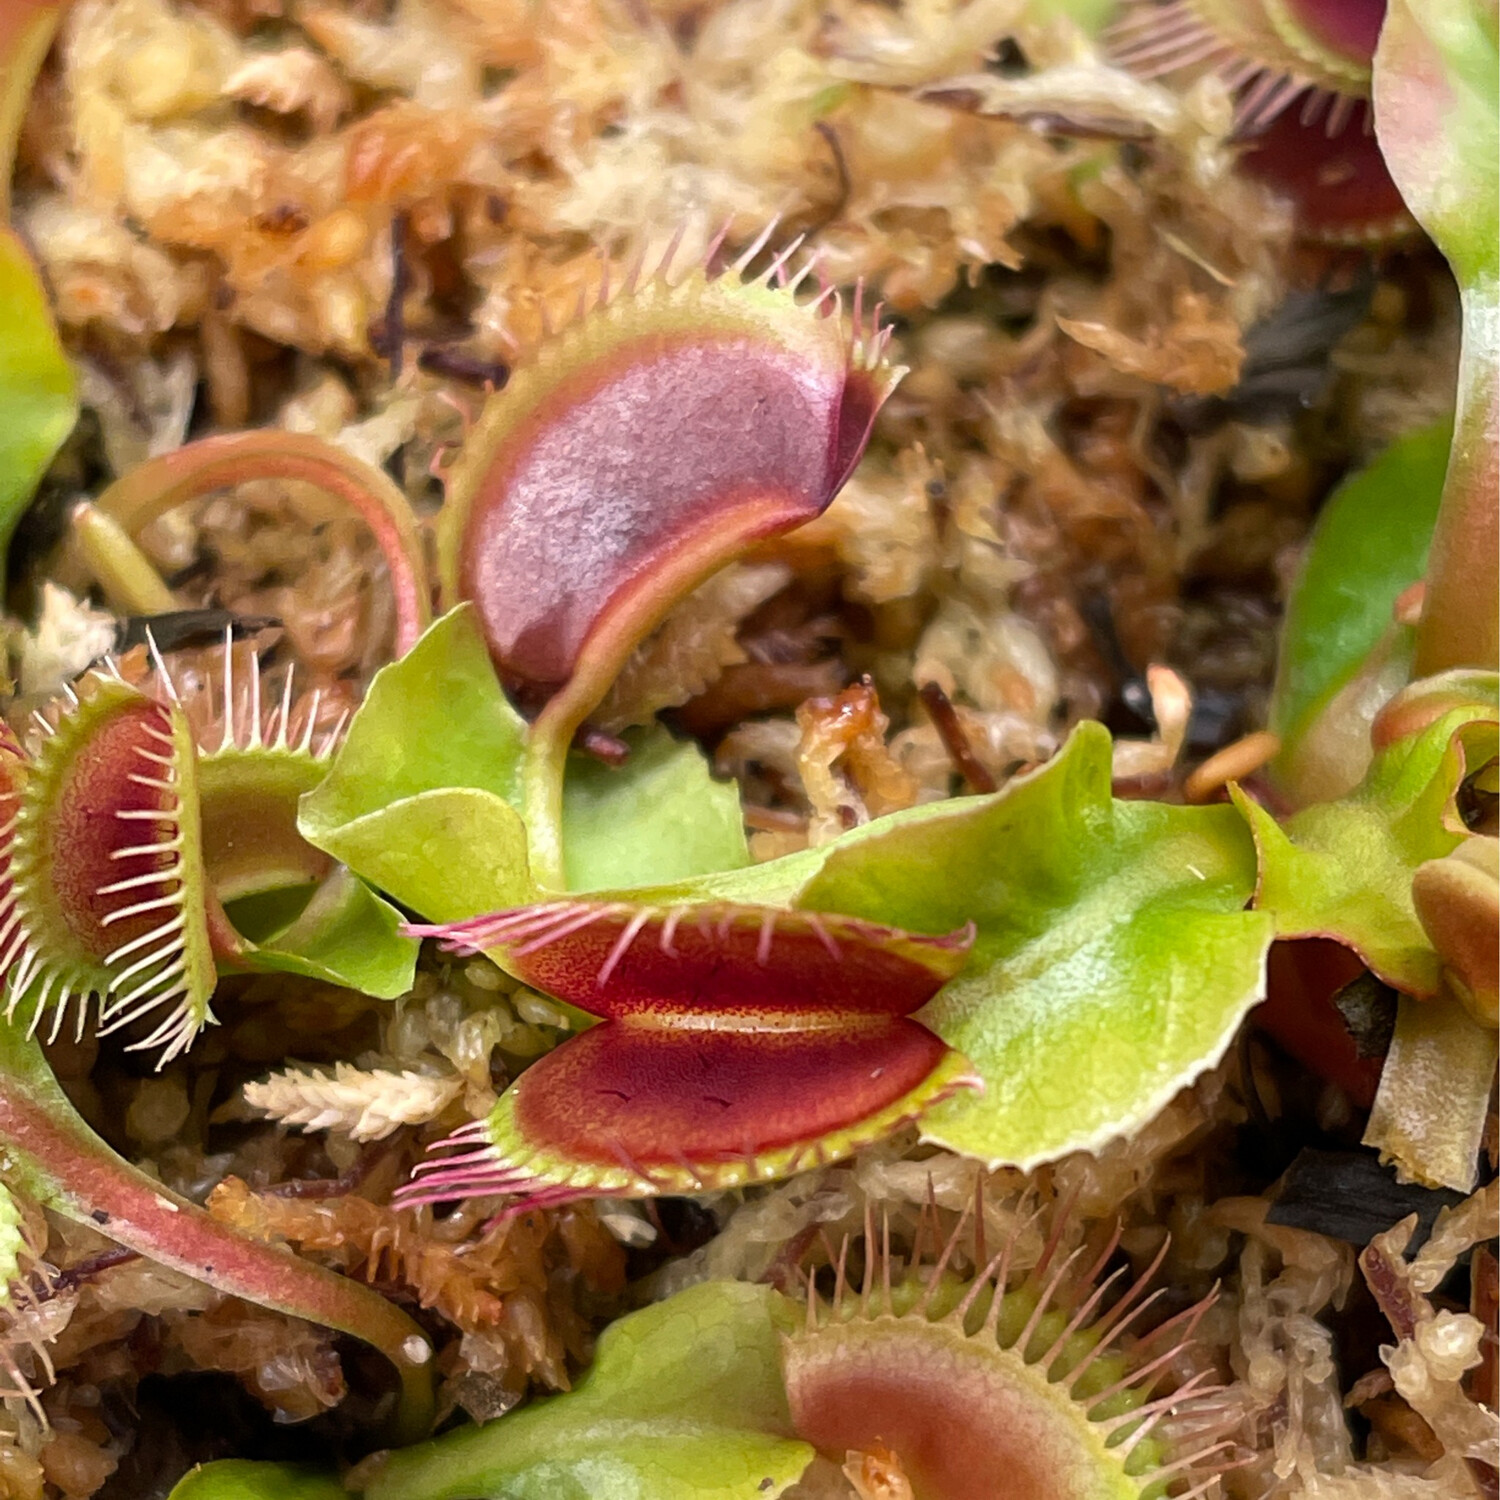 Dionaea muscipula “Phalanx x Bimbo” Venus Flytrap (small)